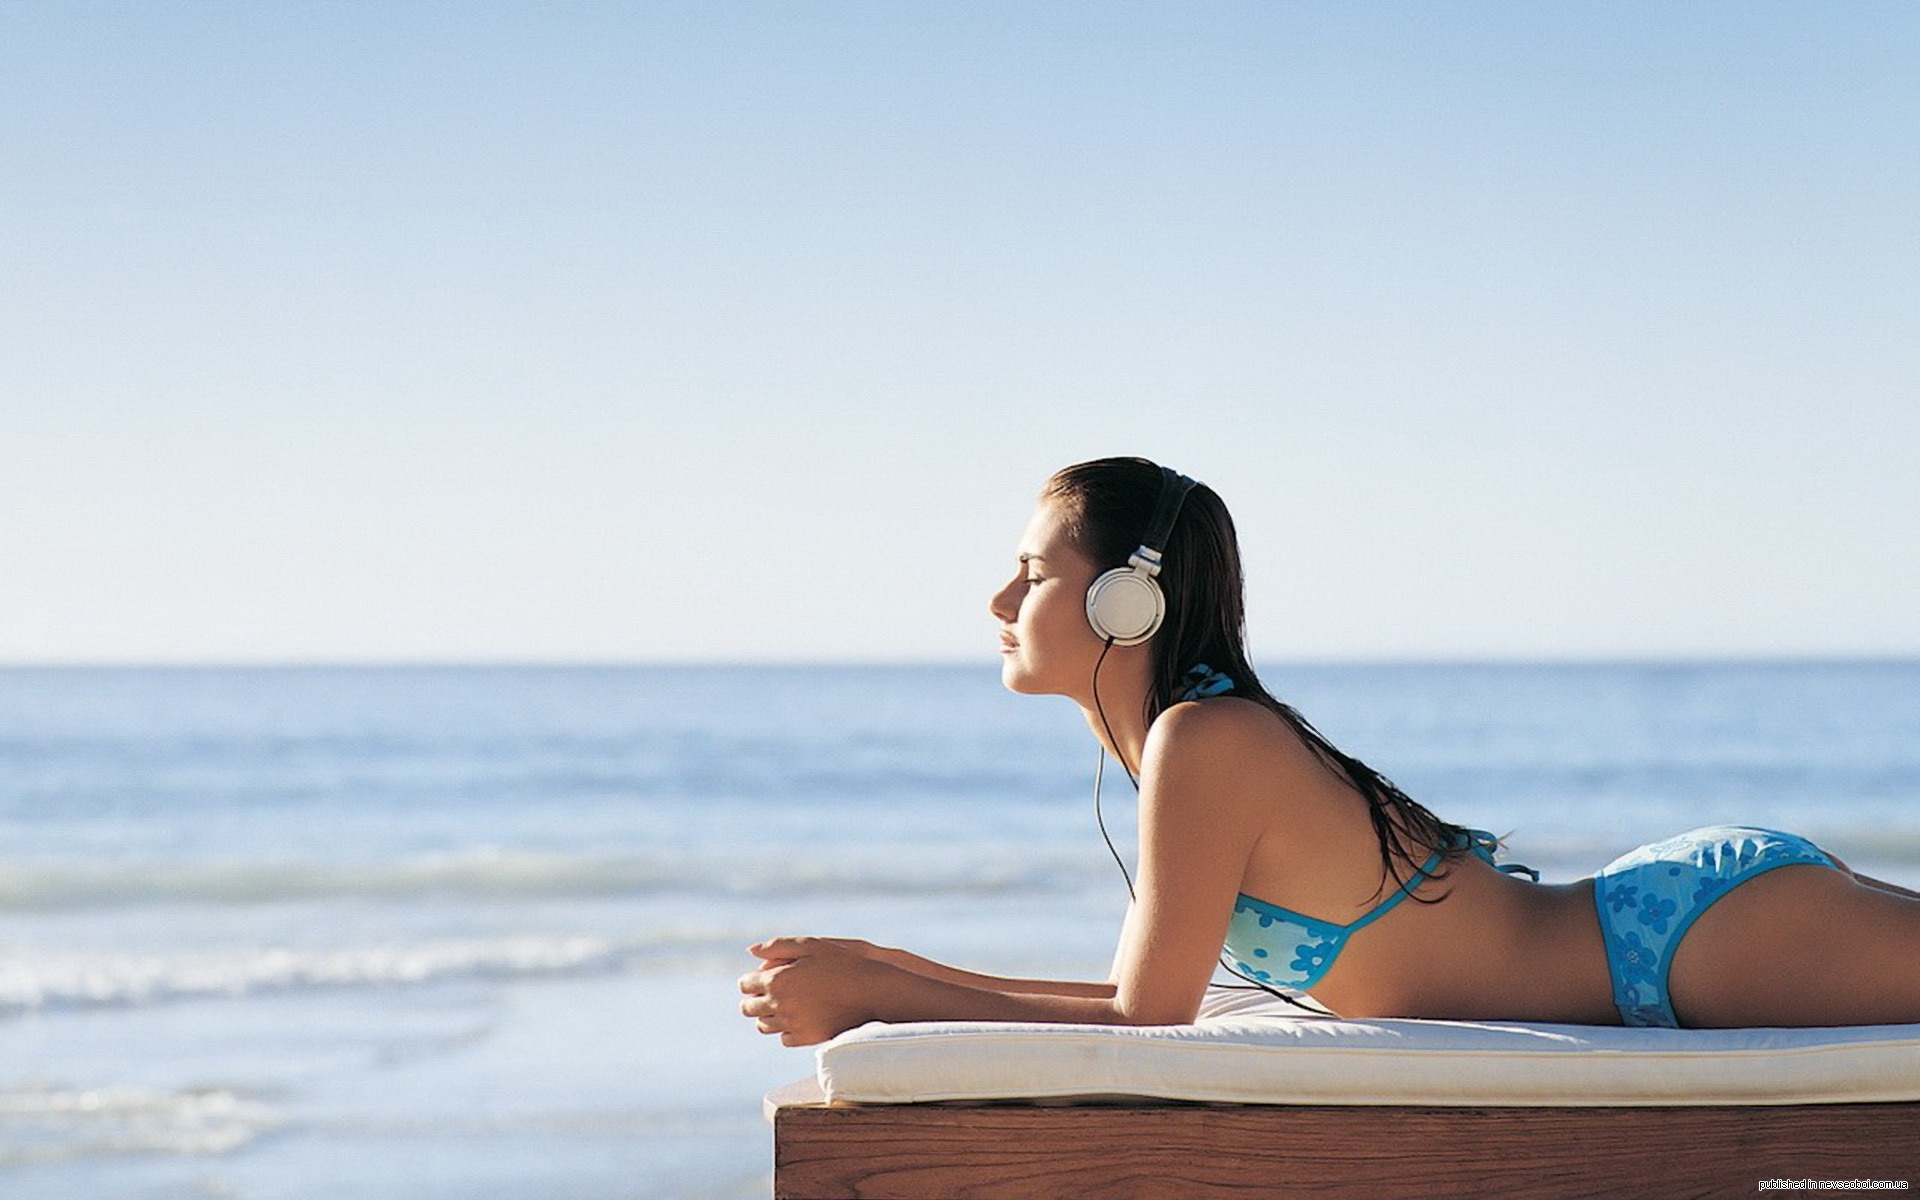 Музыка для массажа без рекламы расслабляющая слушать. Девушка. Девушка в наушниках на пляже. Наушники для девушек. Море релакс.